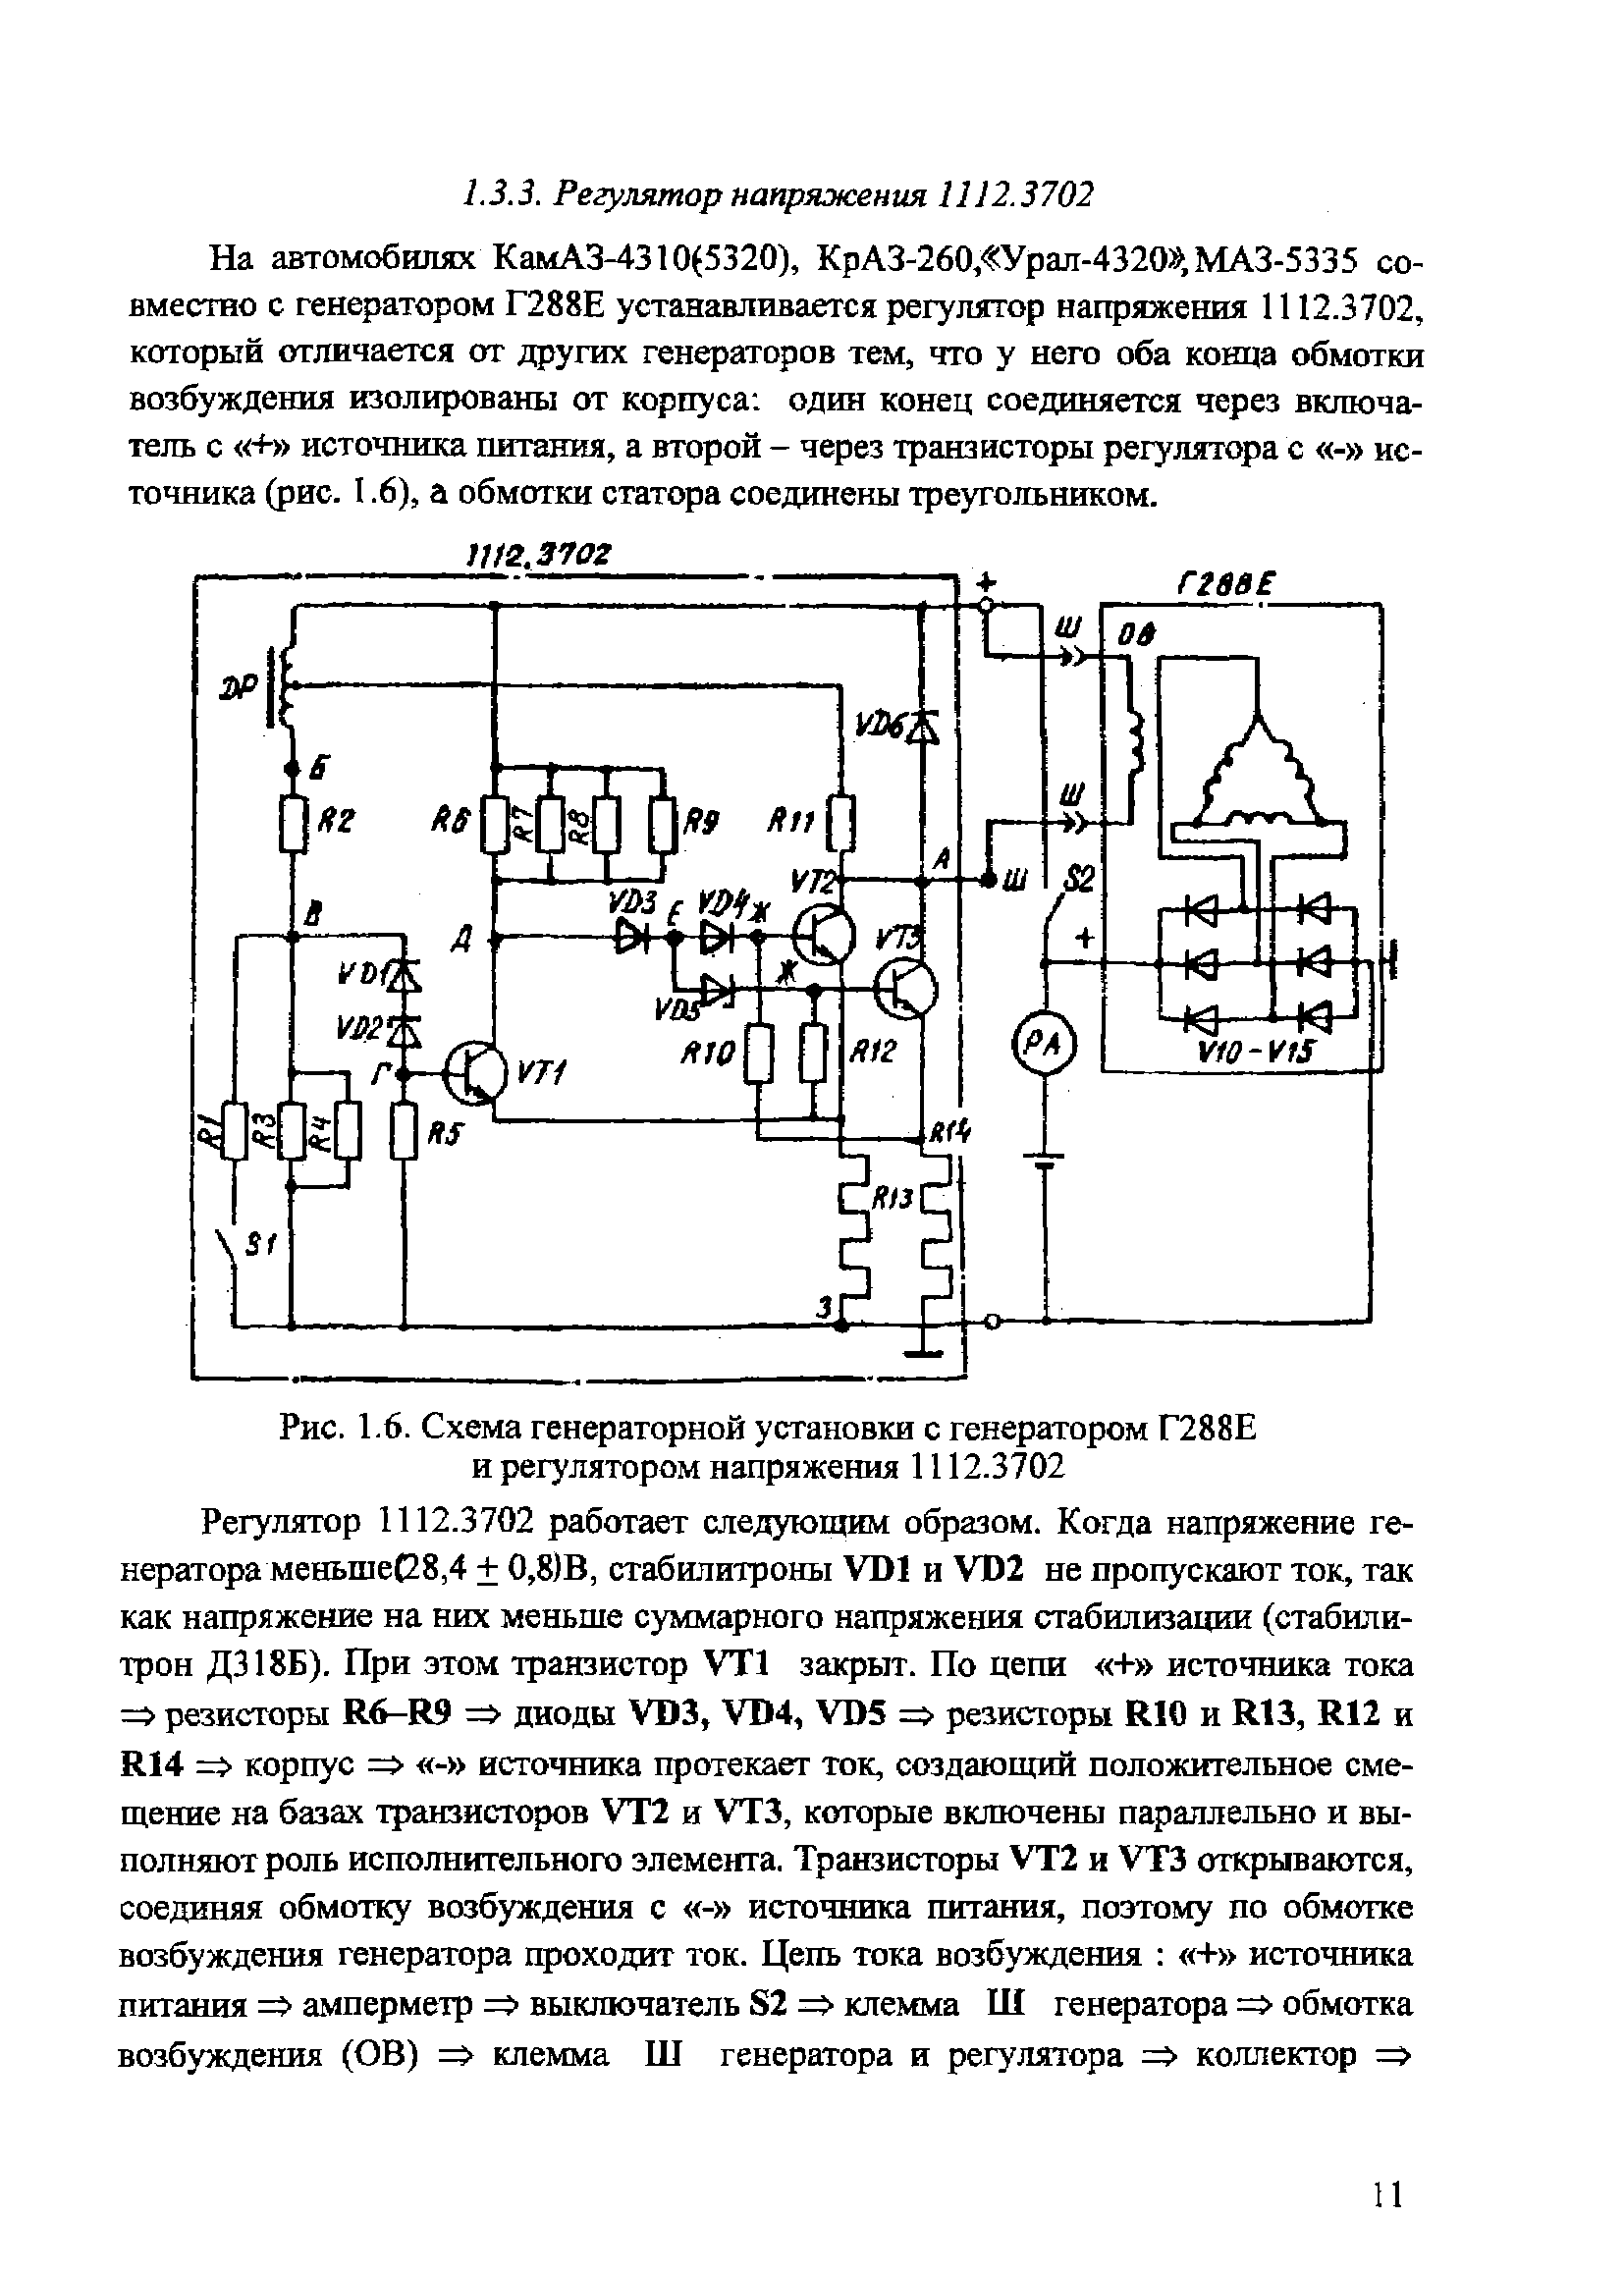 Рис. 1.6. <a href="/info/588008">Схема генераторной установки</a> с генератором Г288Е и регулятором напряжения 1112.3702
